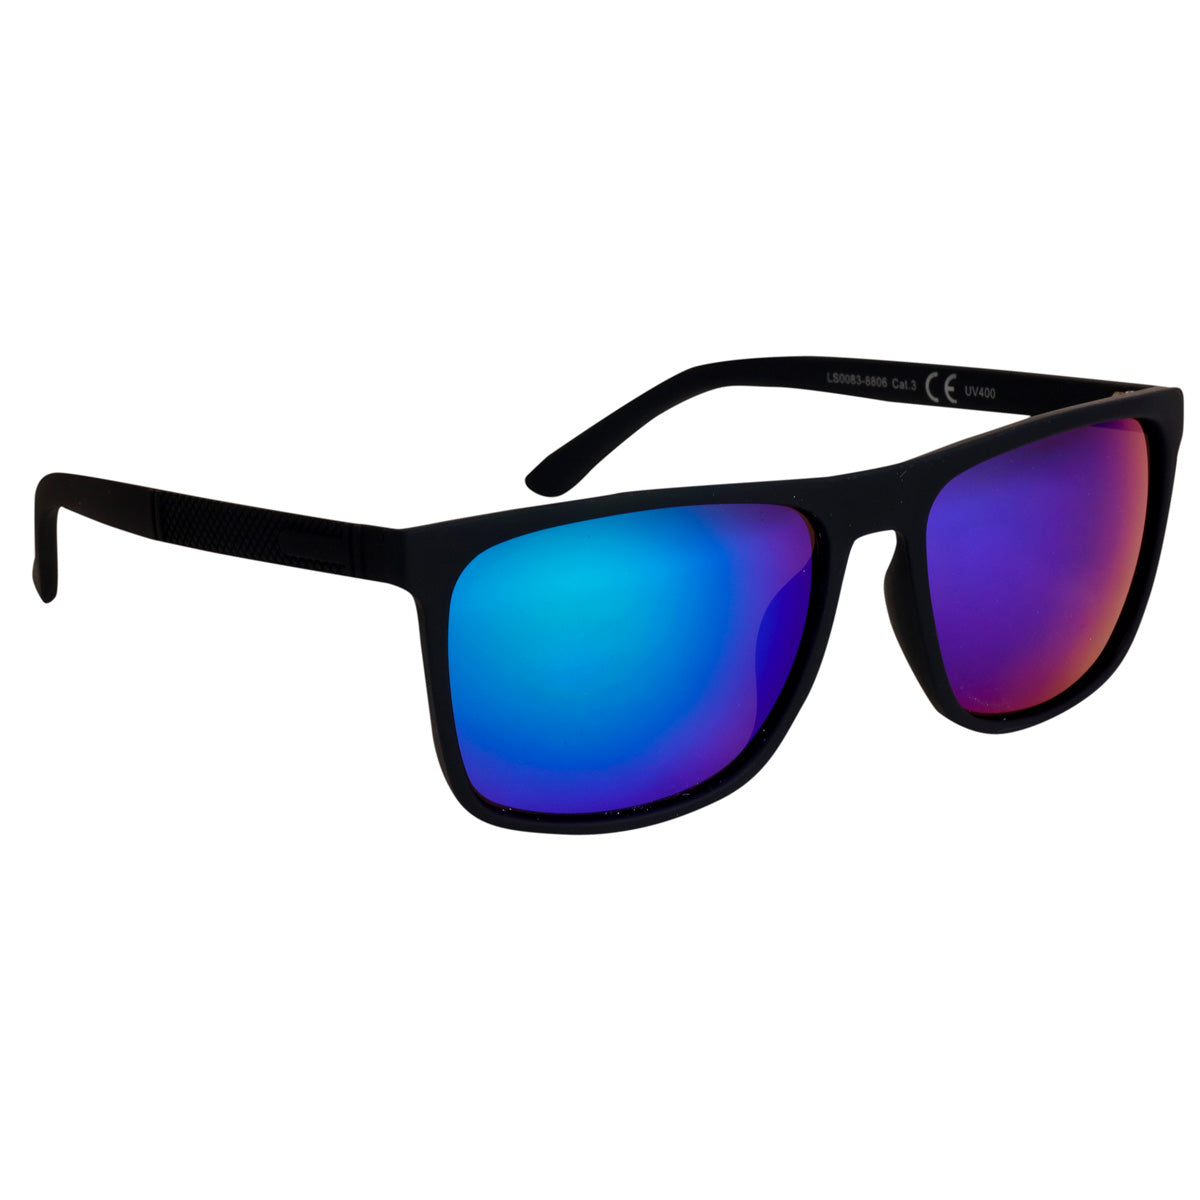 Mirror -lens sunglasses